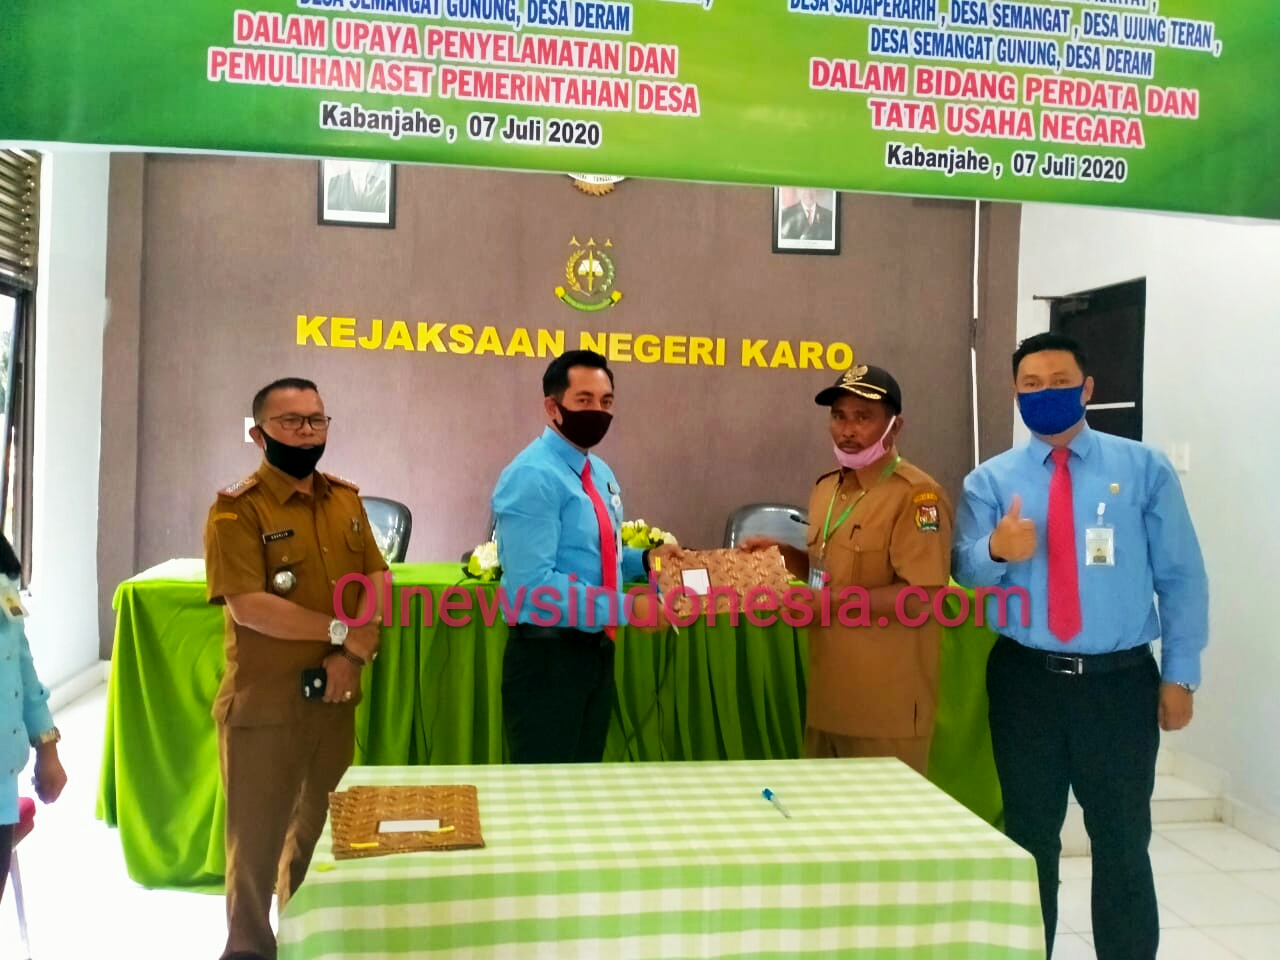 Ket foto  : tampak Kajari Karo Denny Ahmad SH MH yang didampingi Camat Merdeka saat gelar MoU  kepada Salah satu Kades Kecamatan Merdeka Kabupaten Karo di Kabanjahe, Rabu (08/07) 2020 (Ist)